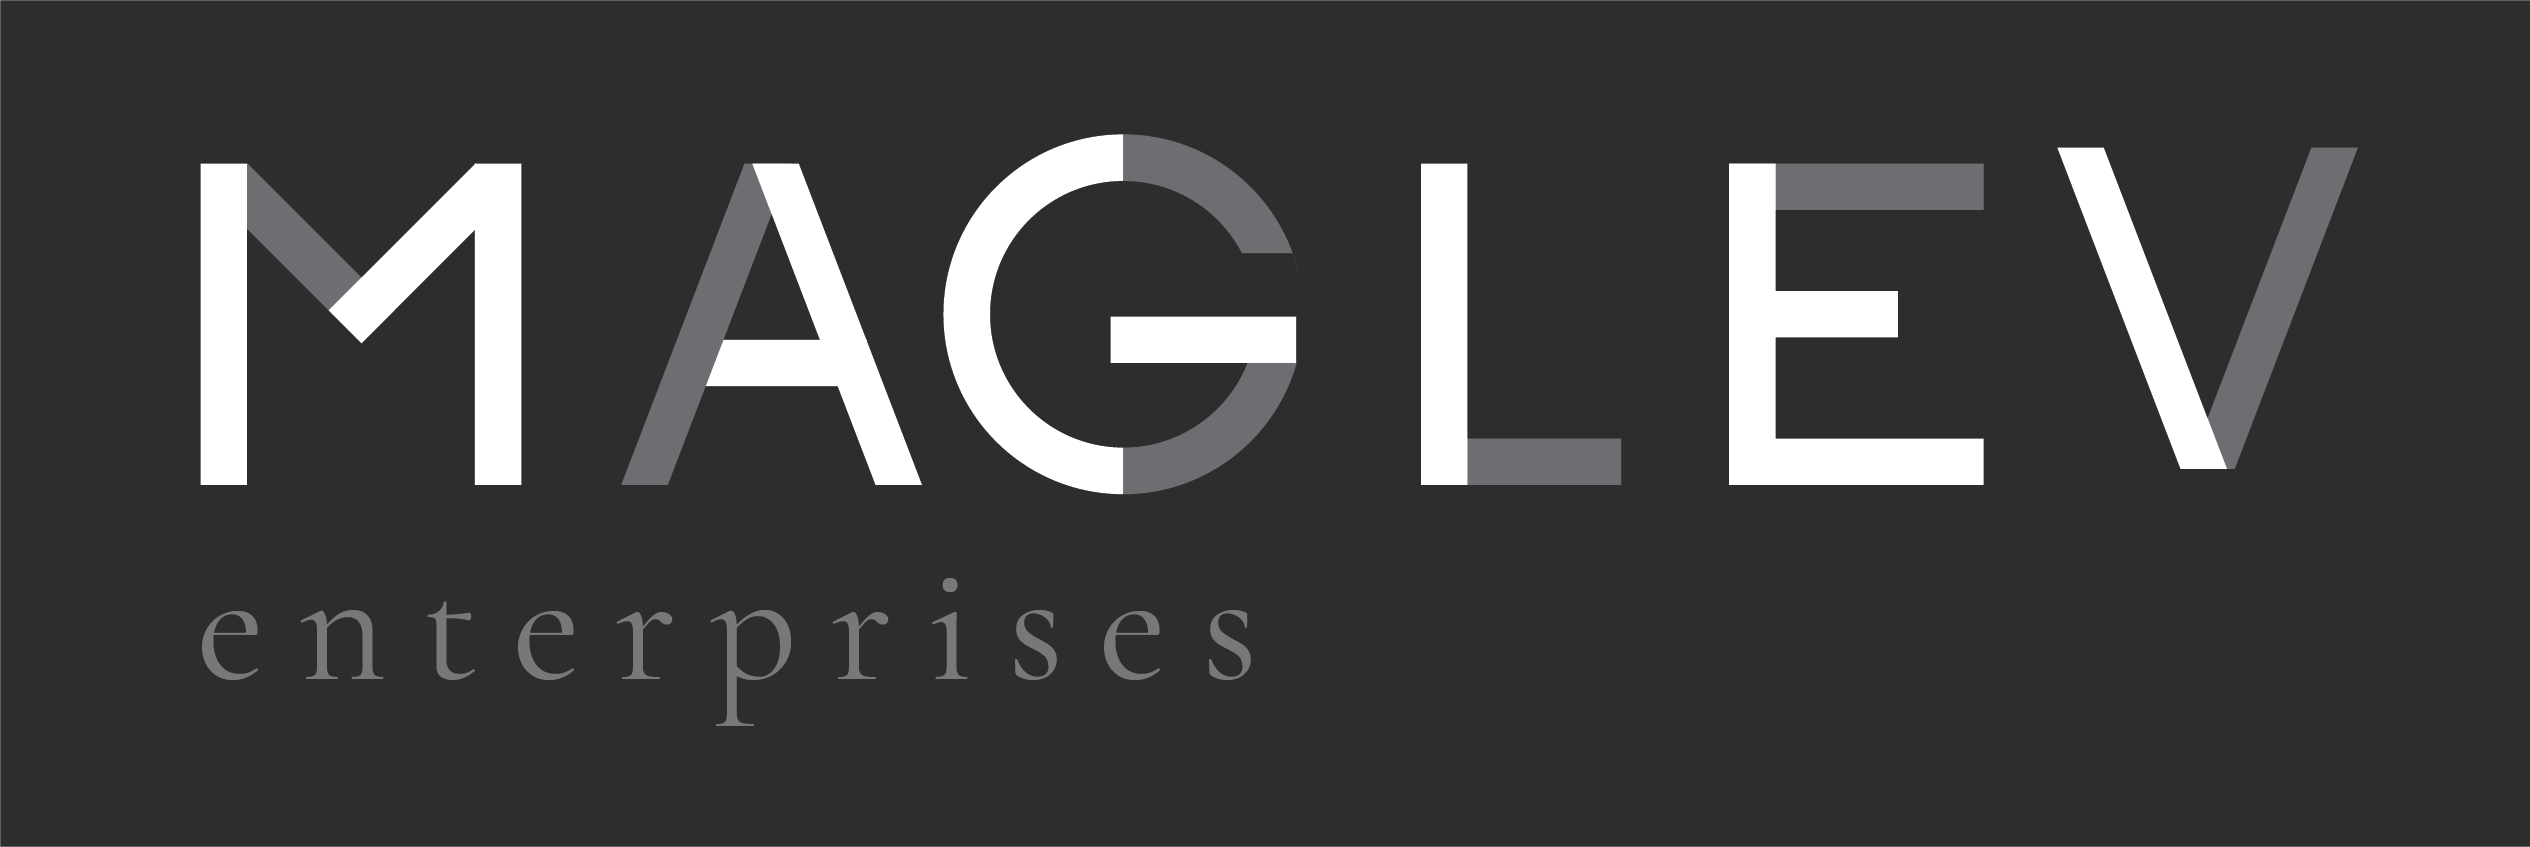 Maglev Logo - Maglev Enterprises